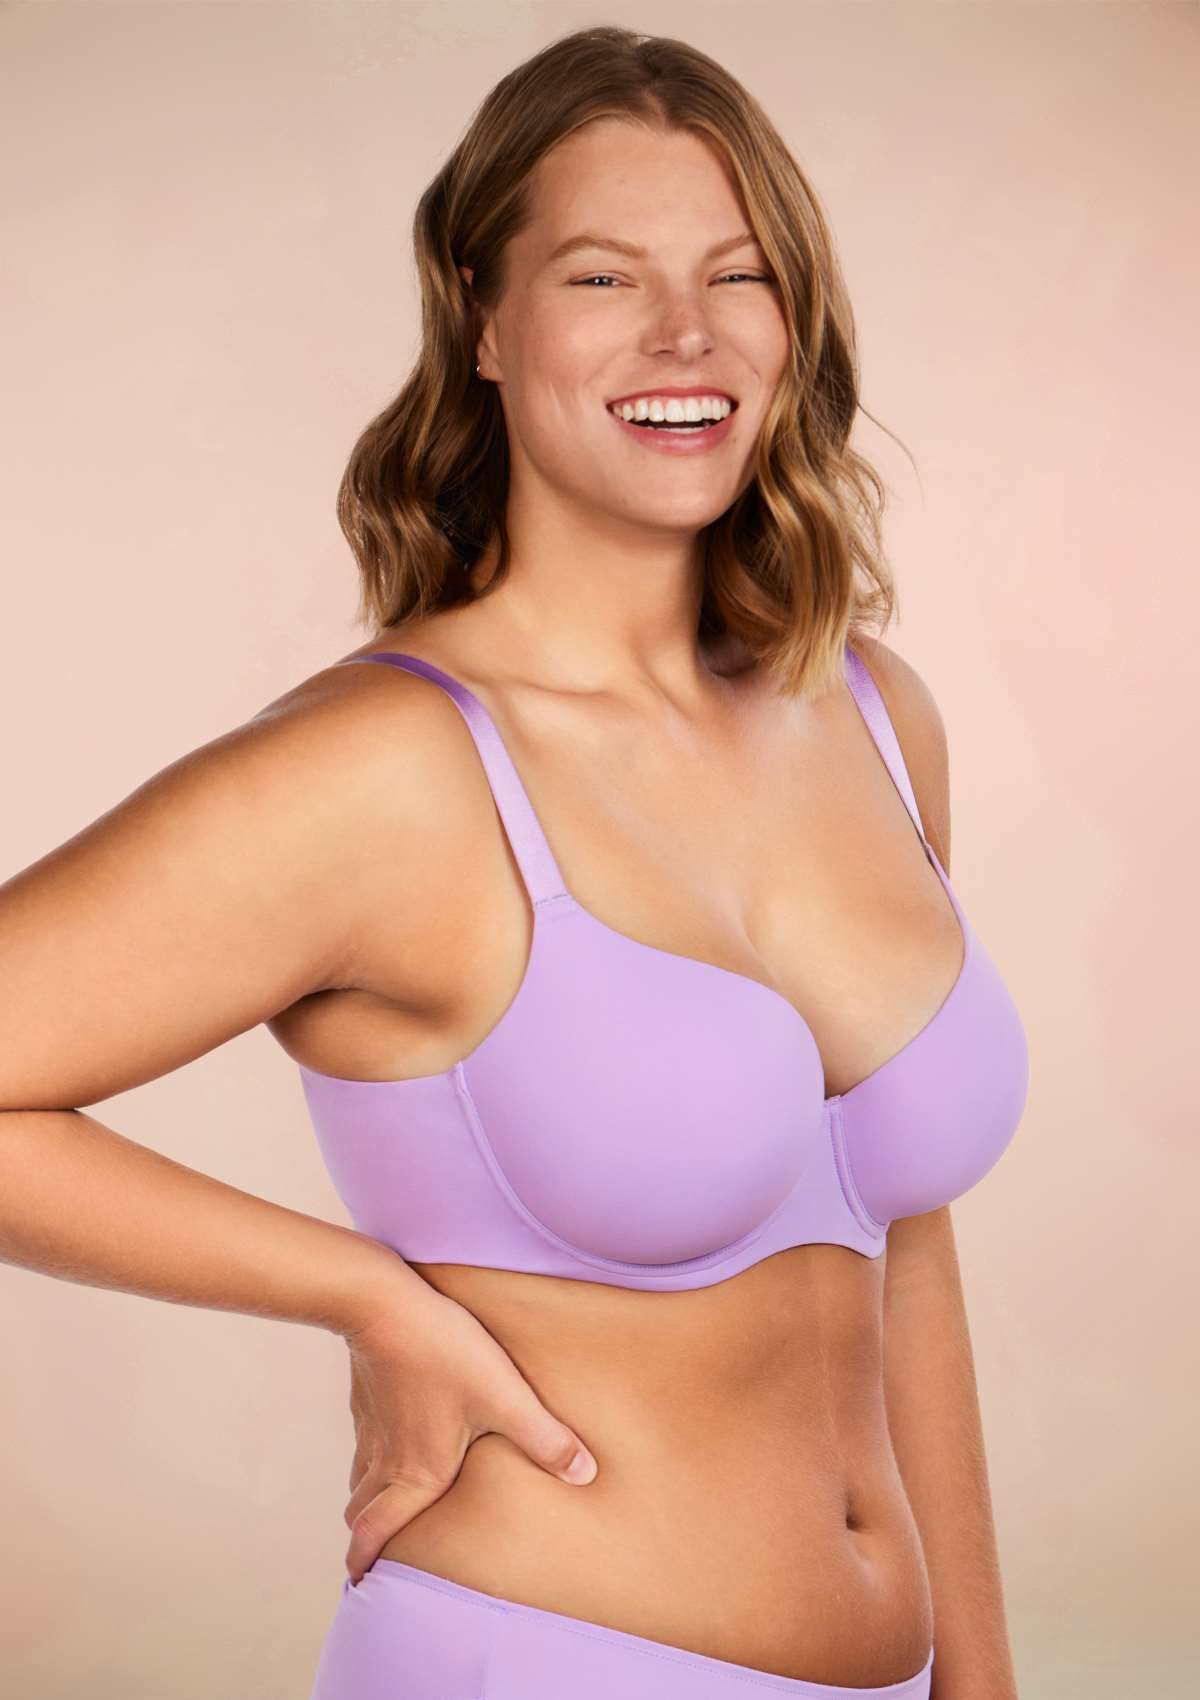 HSIA Gemma Smooth Lightly Padded T-shirt Bra For Heavy Breasts - Purple / 40 / DDD/F